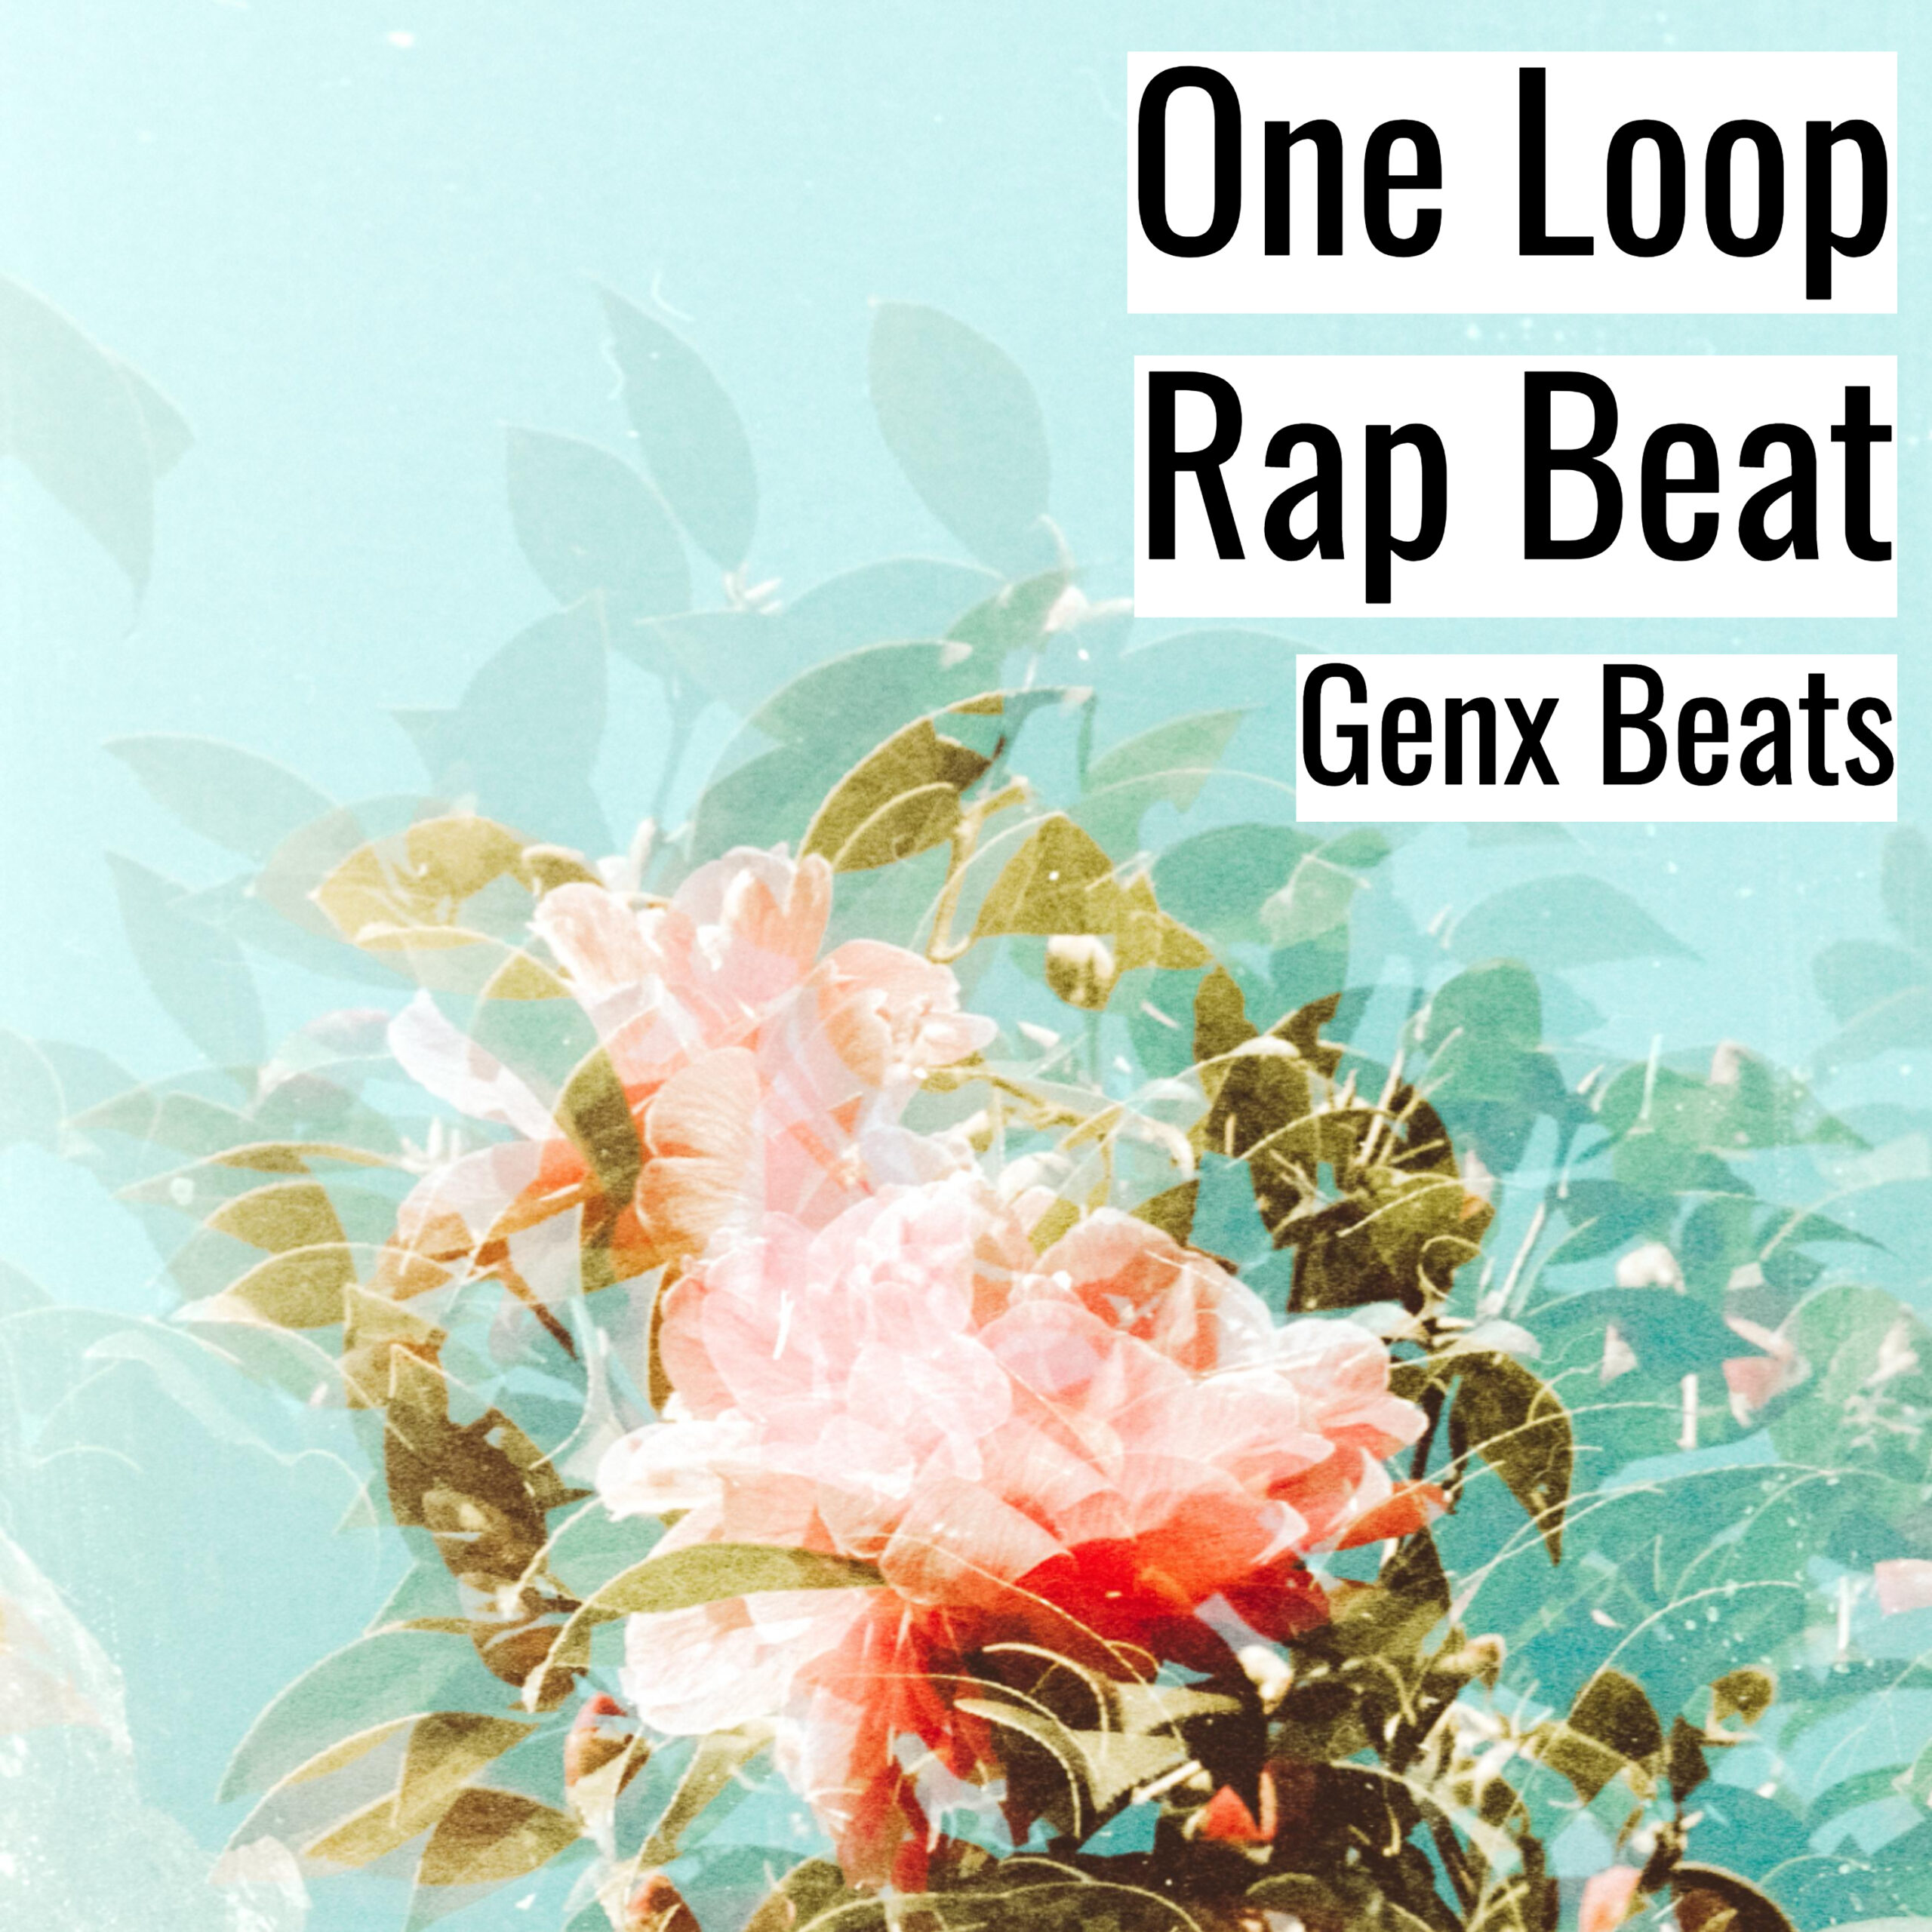 One Loop Rap Beat scaled